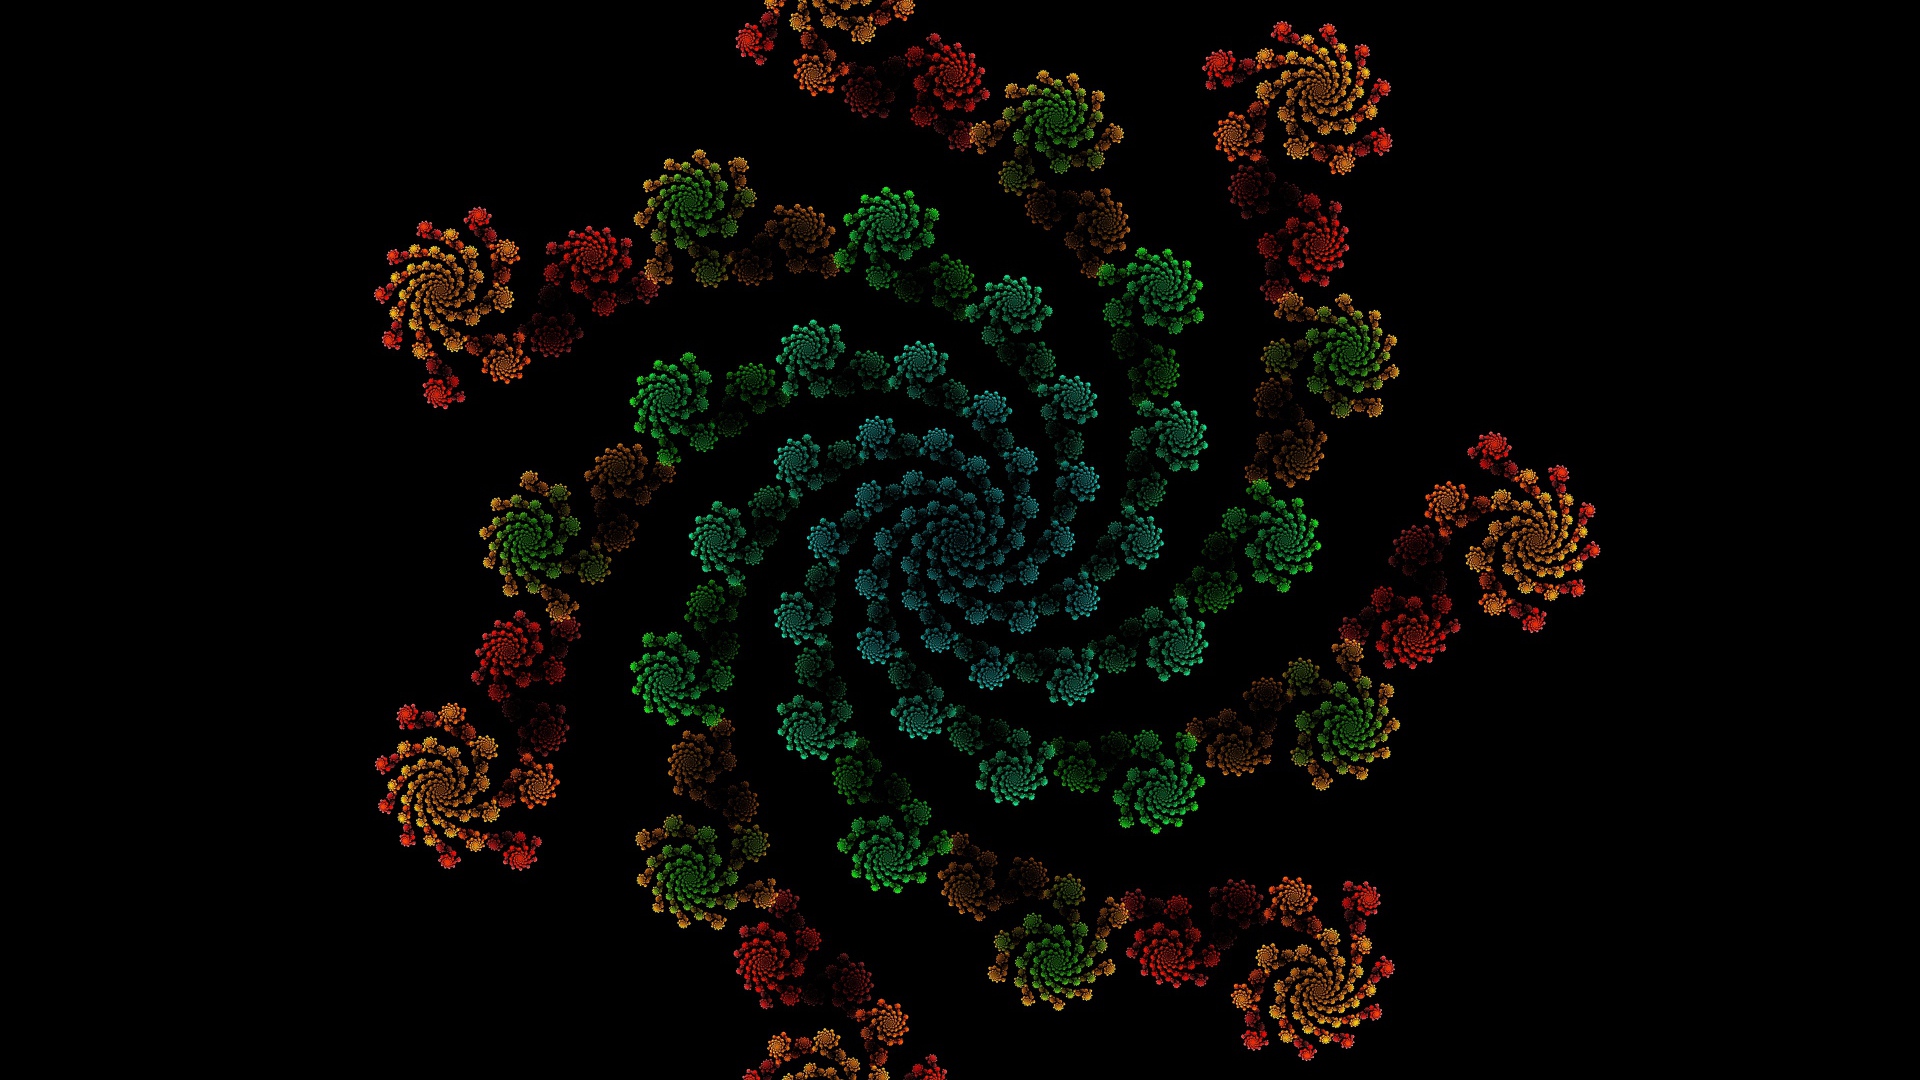 Patterned fractal pattern on a black background.